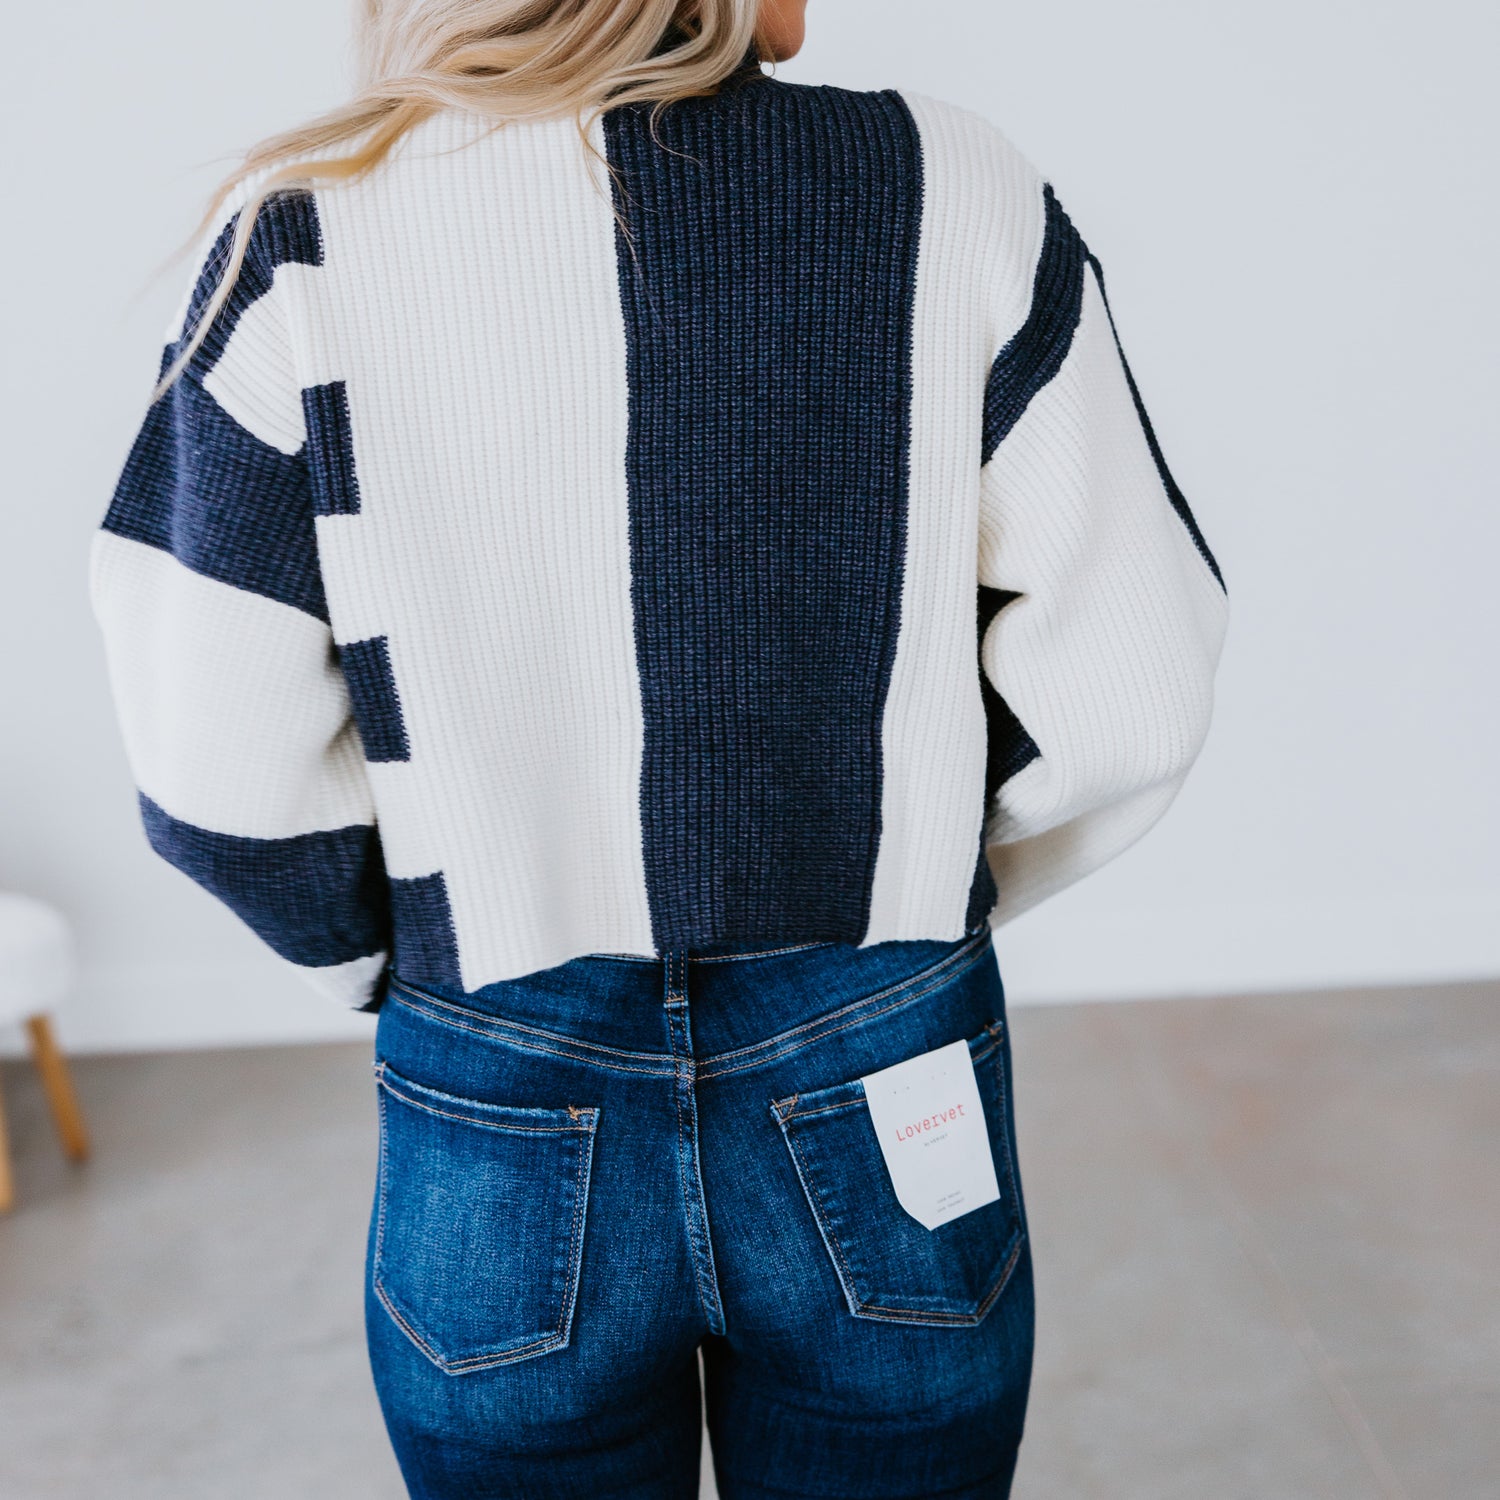 Kloe Striped Sweater